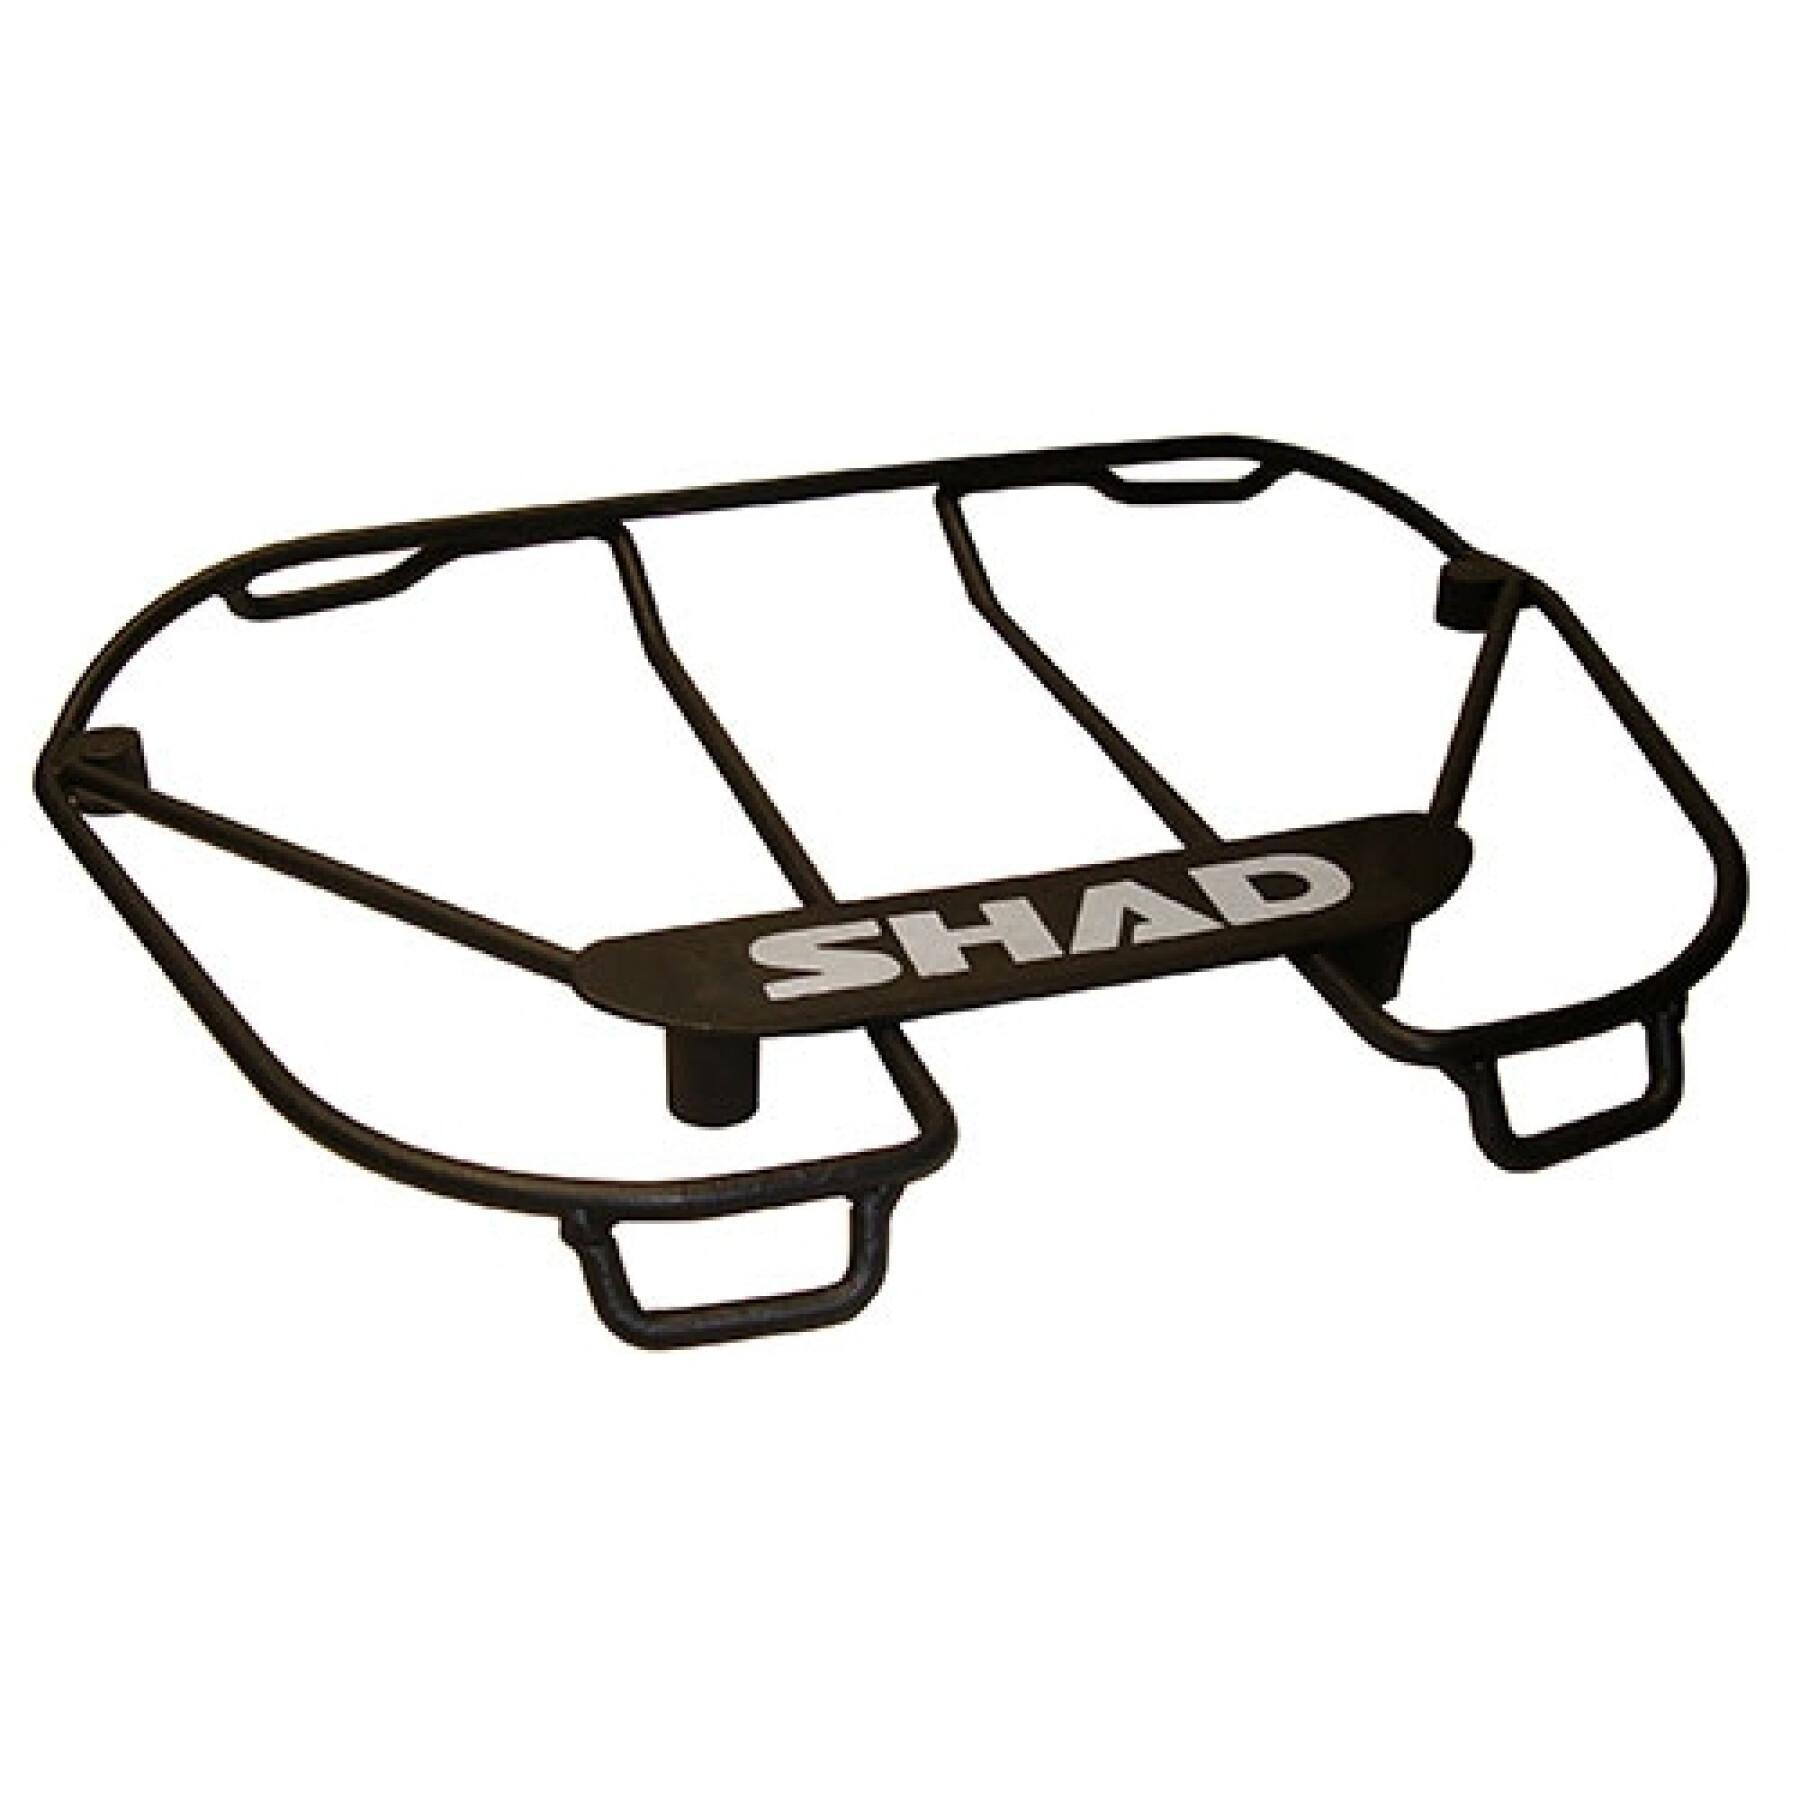 Porte-objet top case Shad SH46/SH48/SH49/SH50